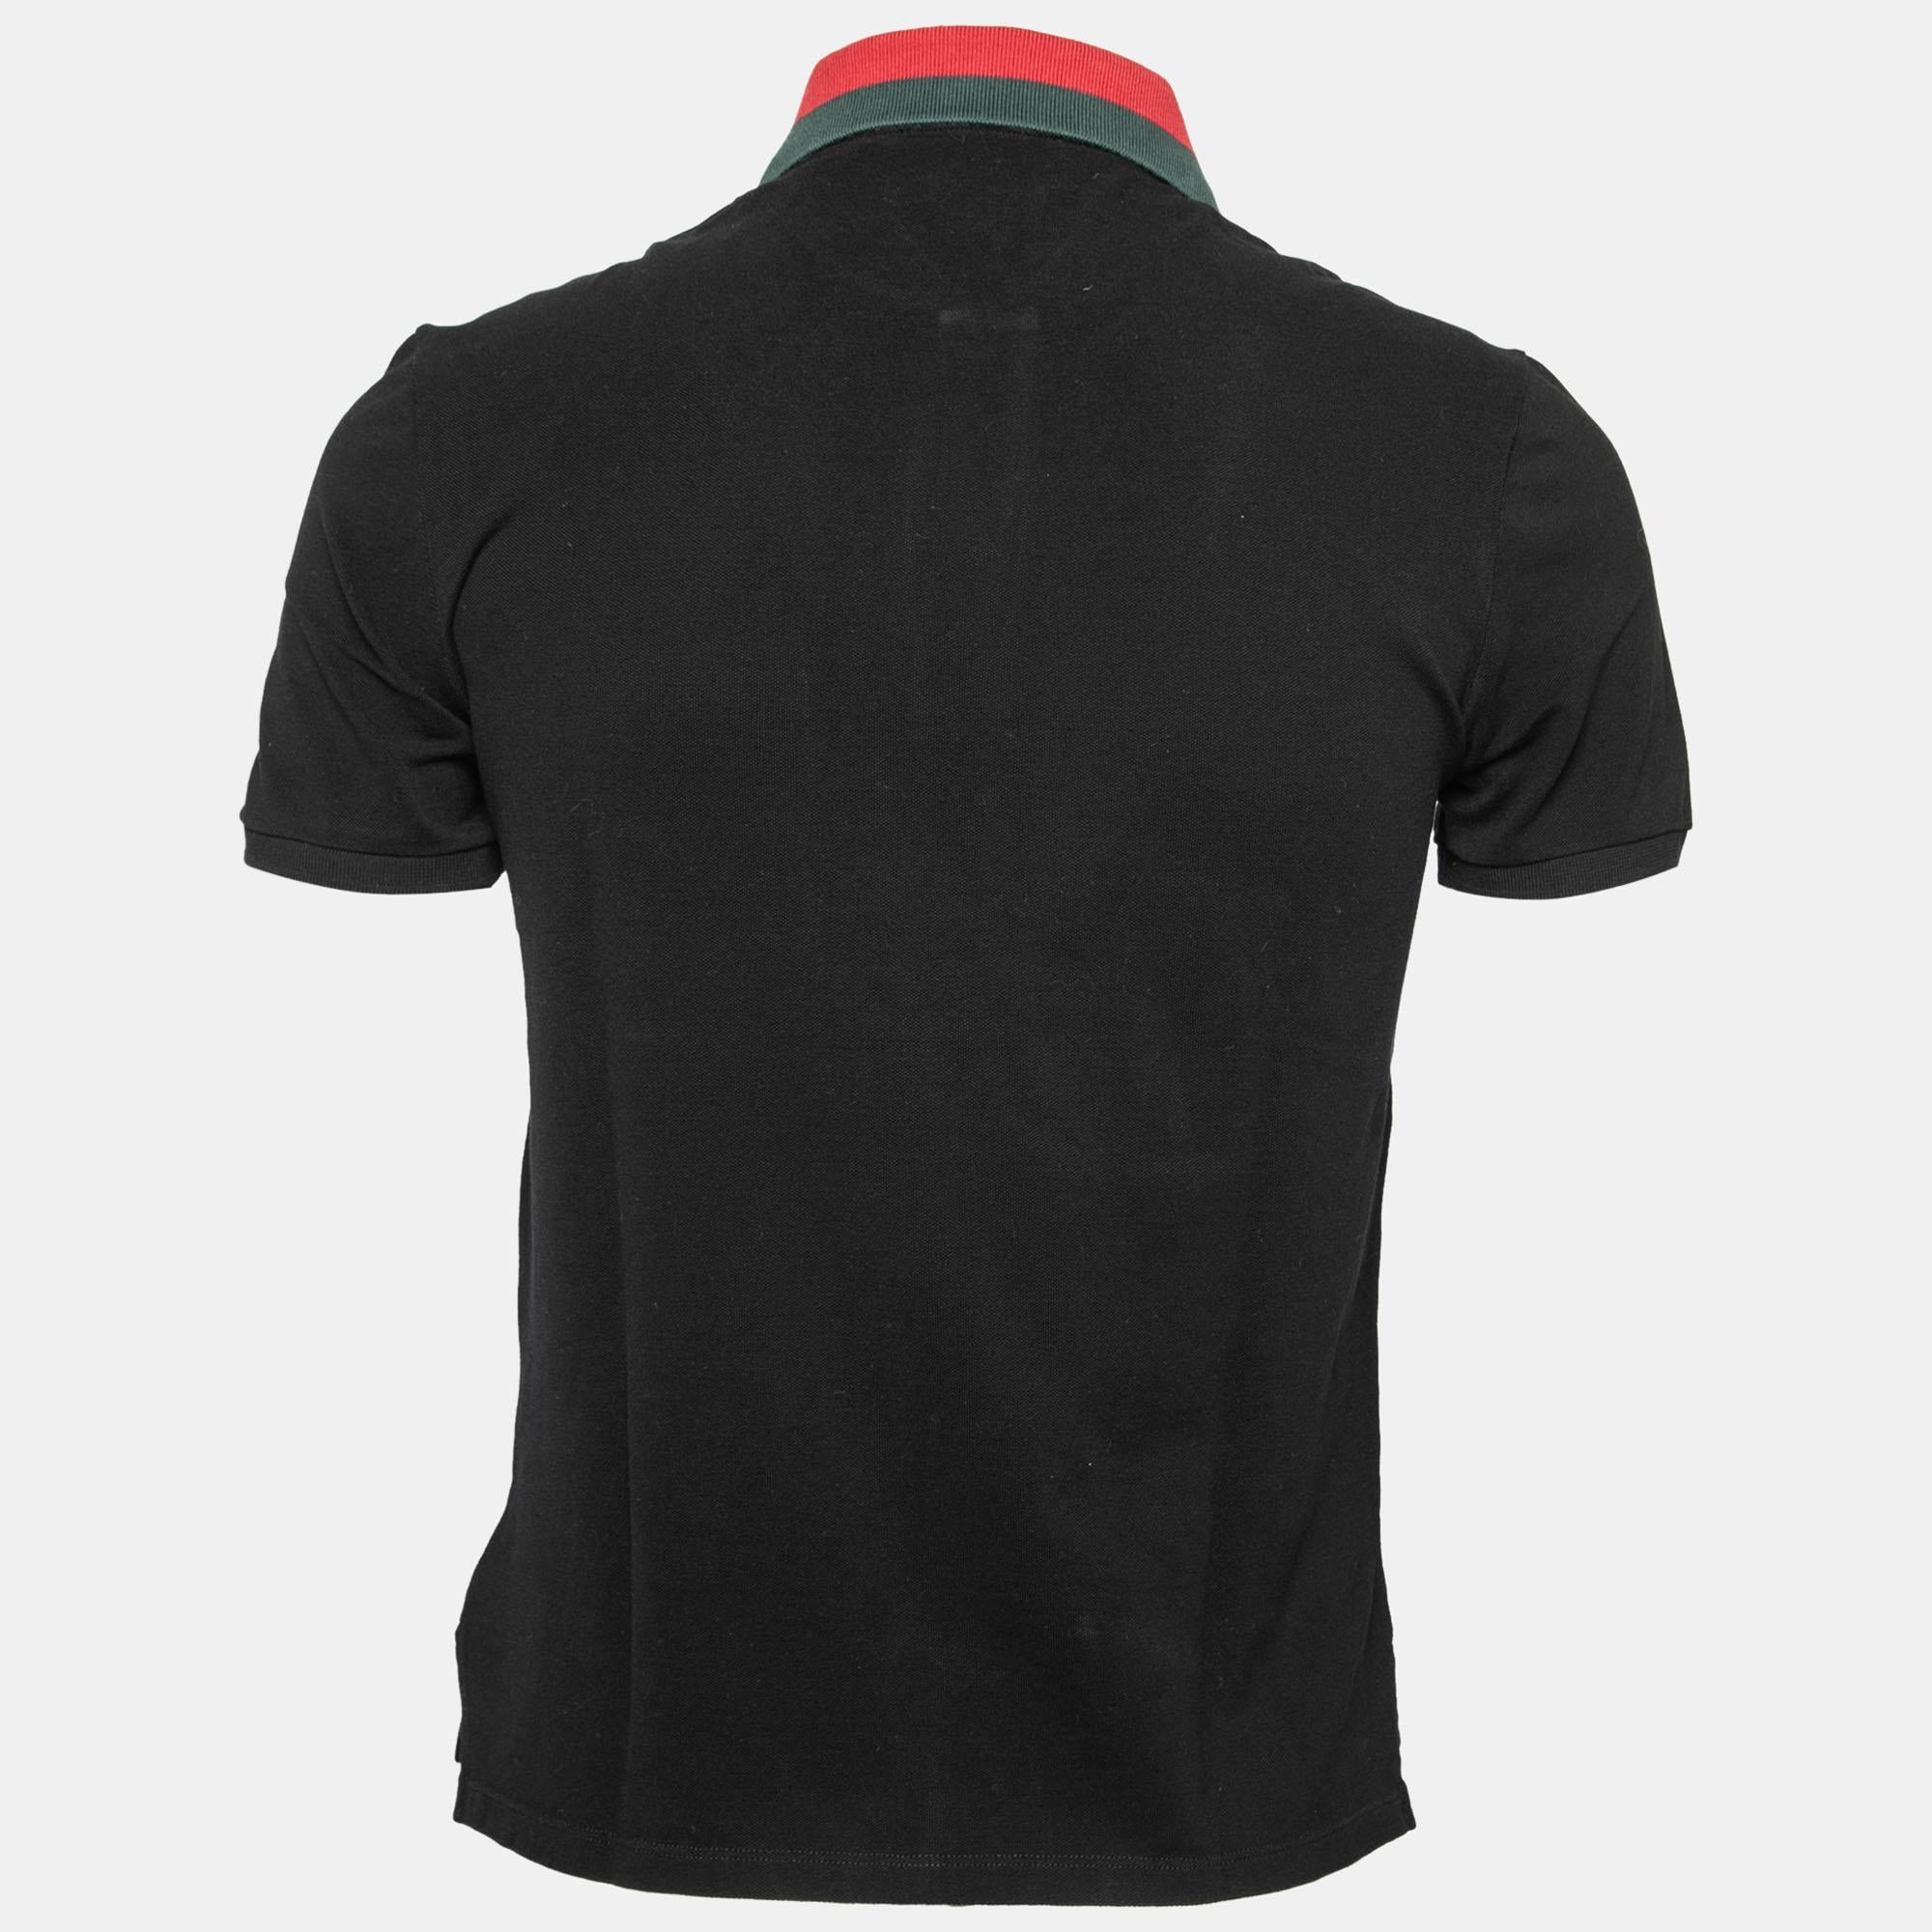 Men's Gucci Black Cotton Pique Web Trimmed Polo T-Shirt S